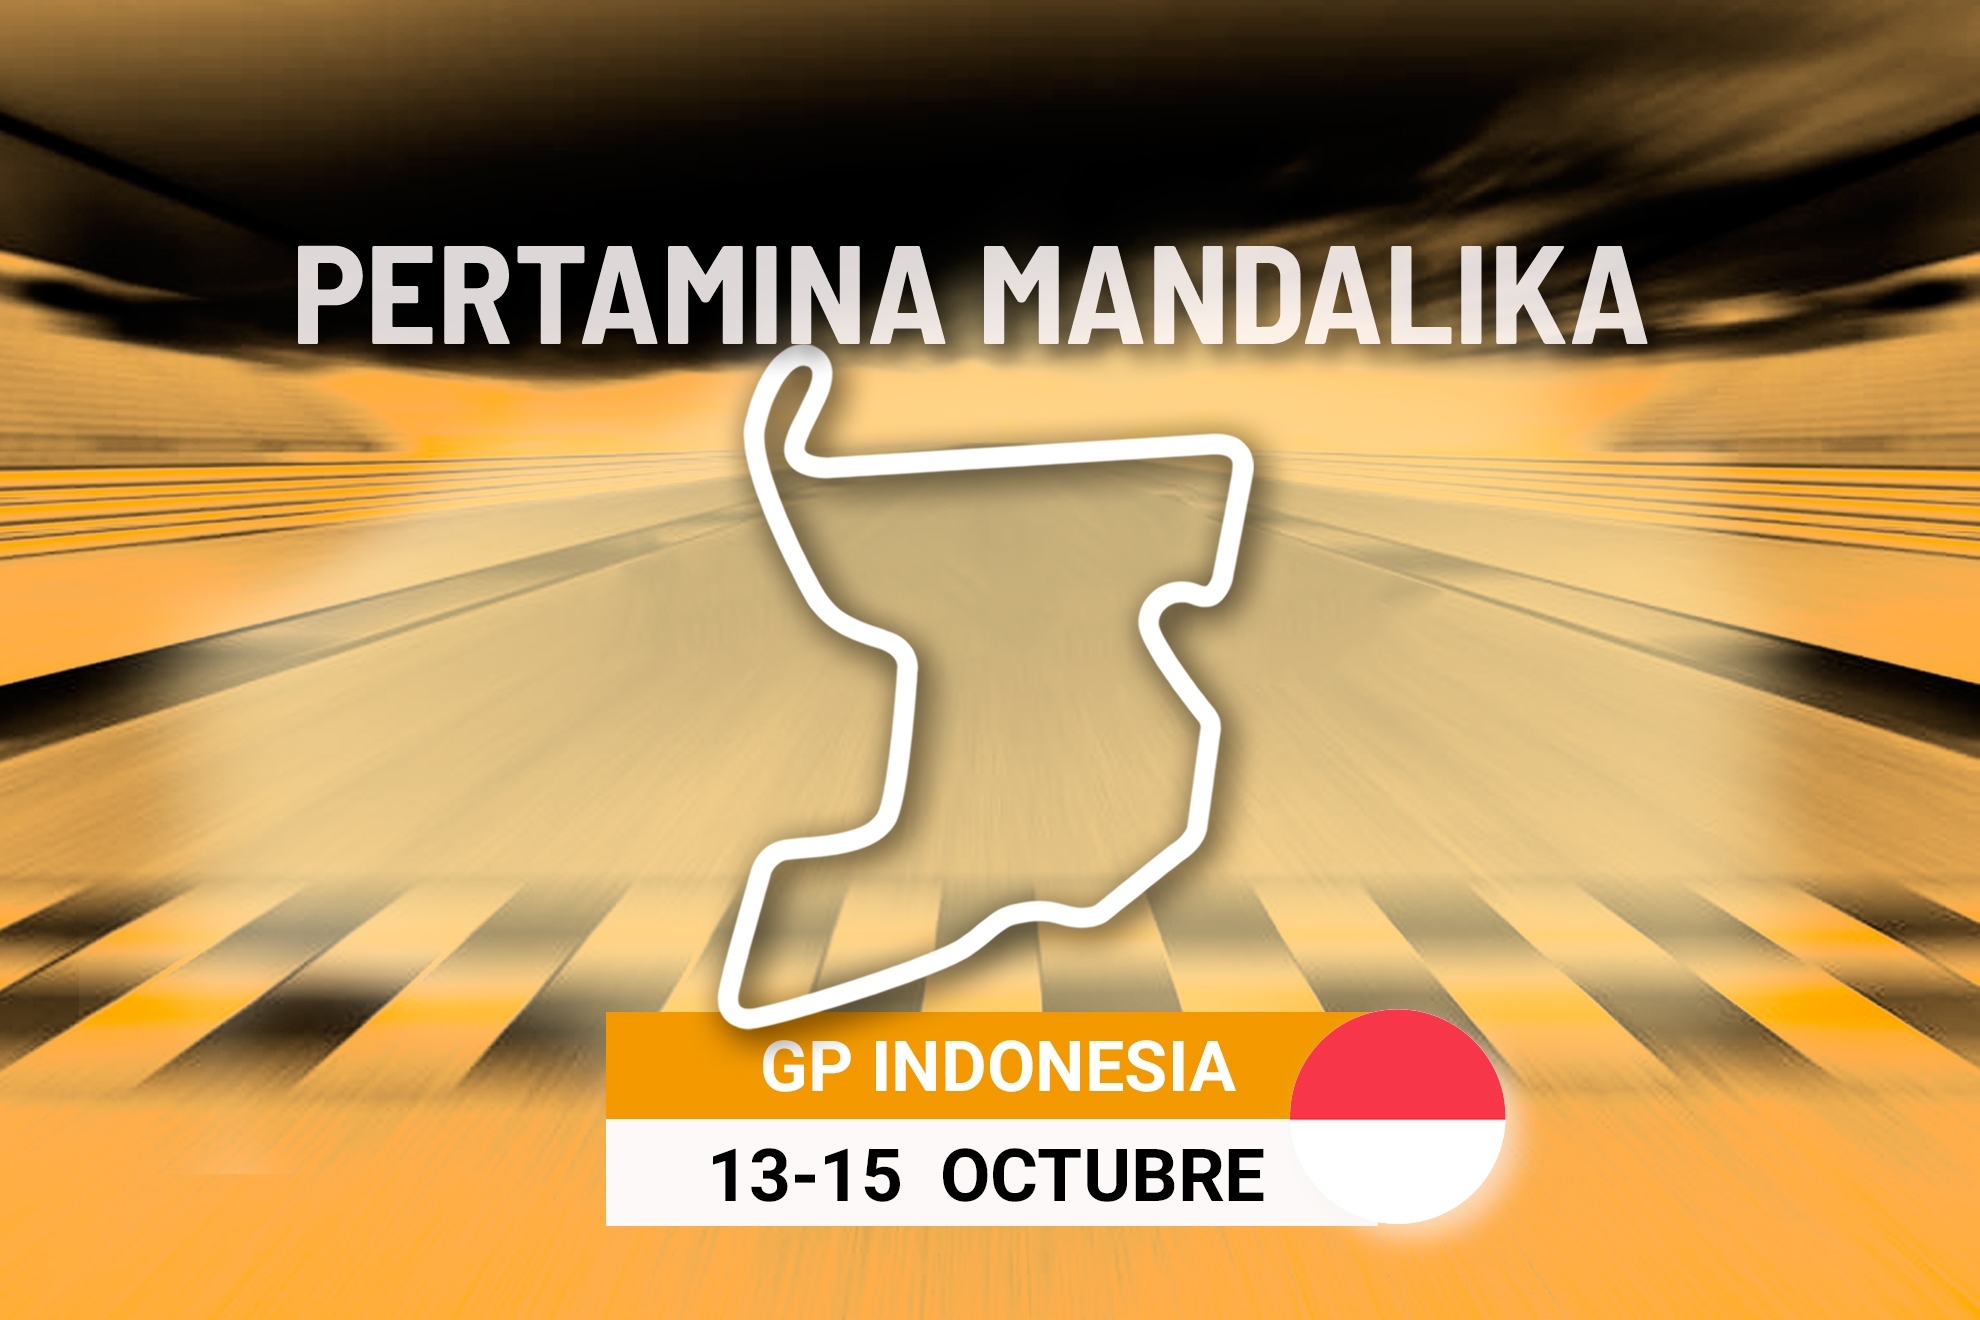 Carrera del GP Indonesia de MotoGP 2023: a qu� hora es y d�nde ver en TV las carreras de Mandalika